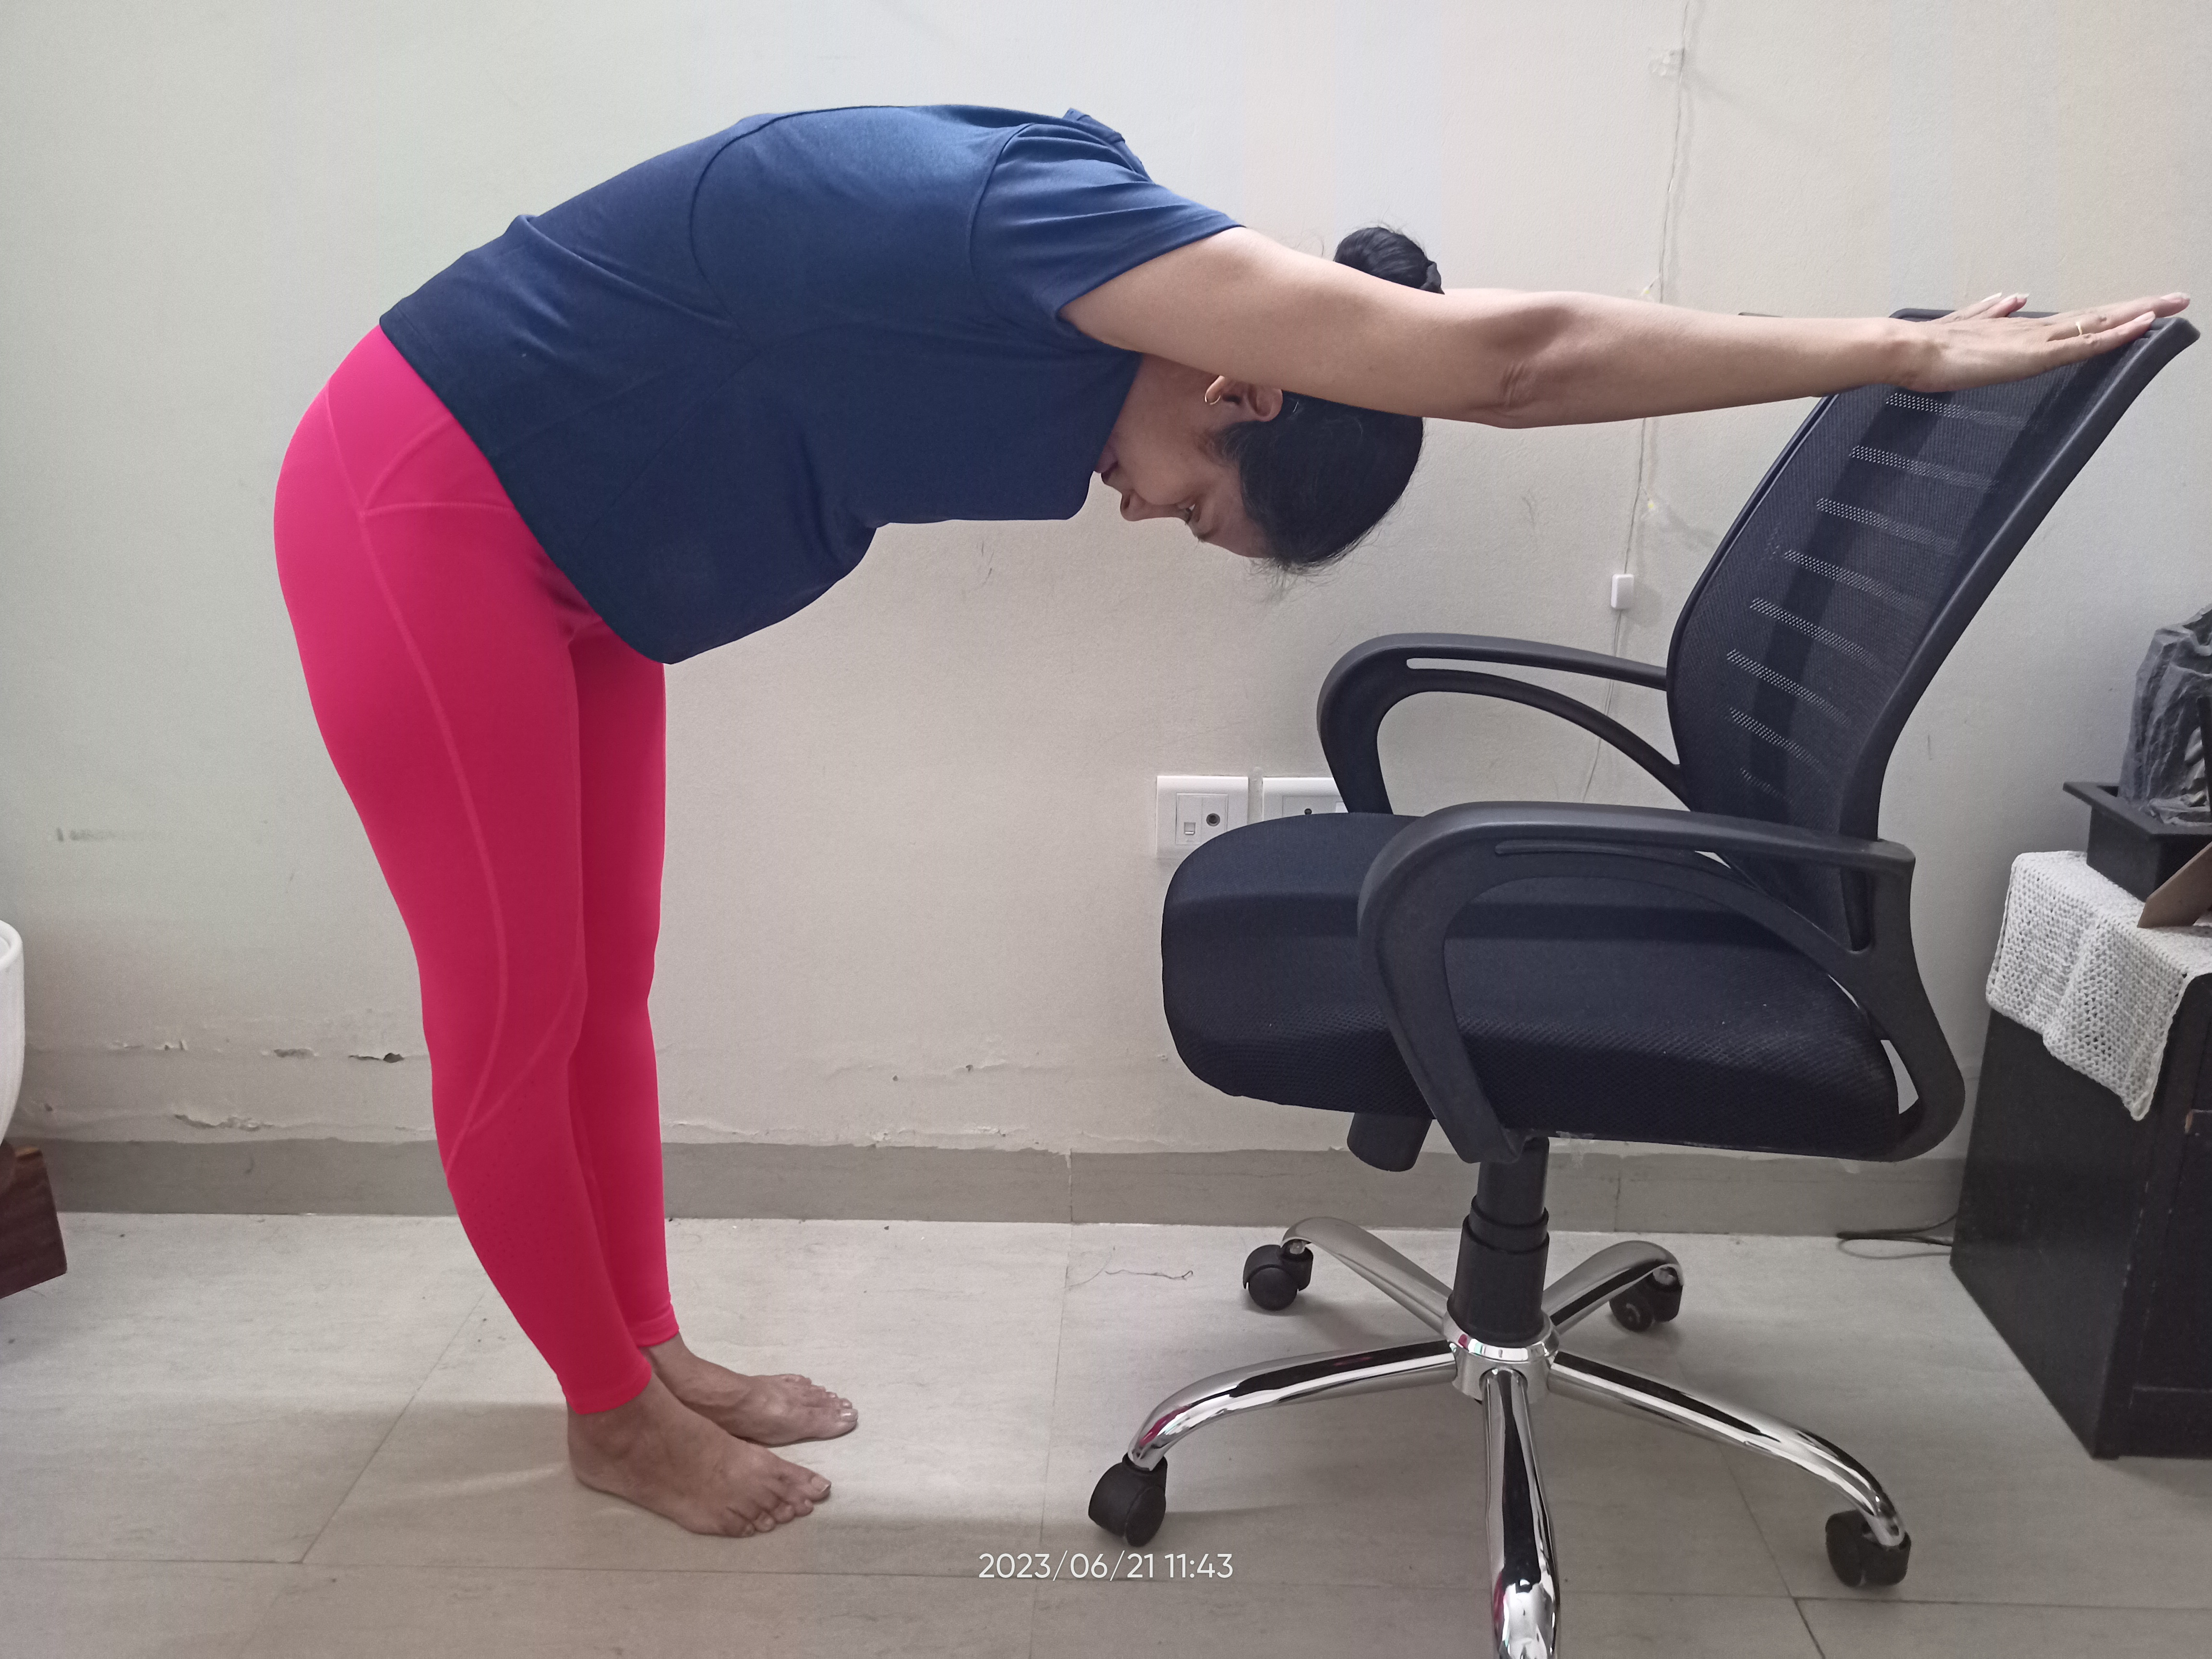 Top 10 Sitting Yoga Poses (Asanas) - Rishikul Yogshala Blog